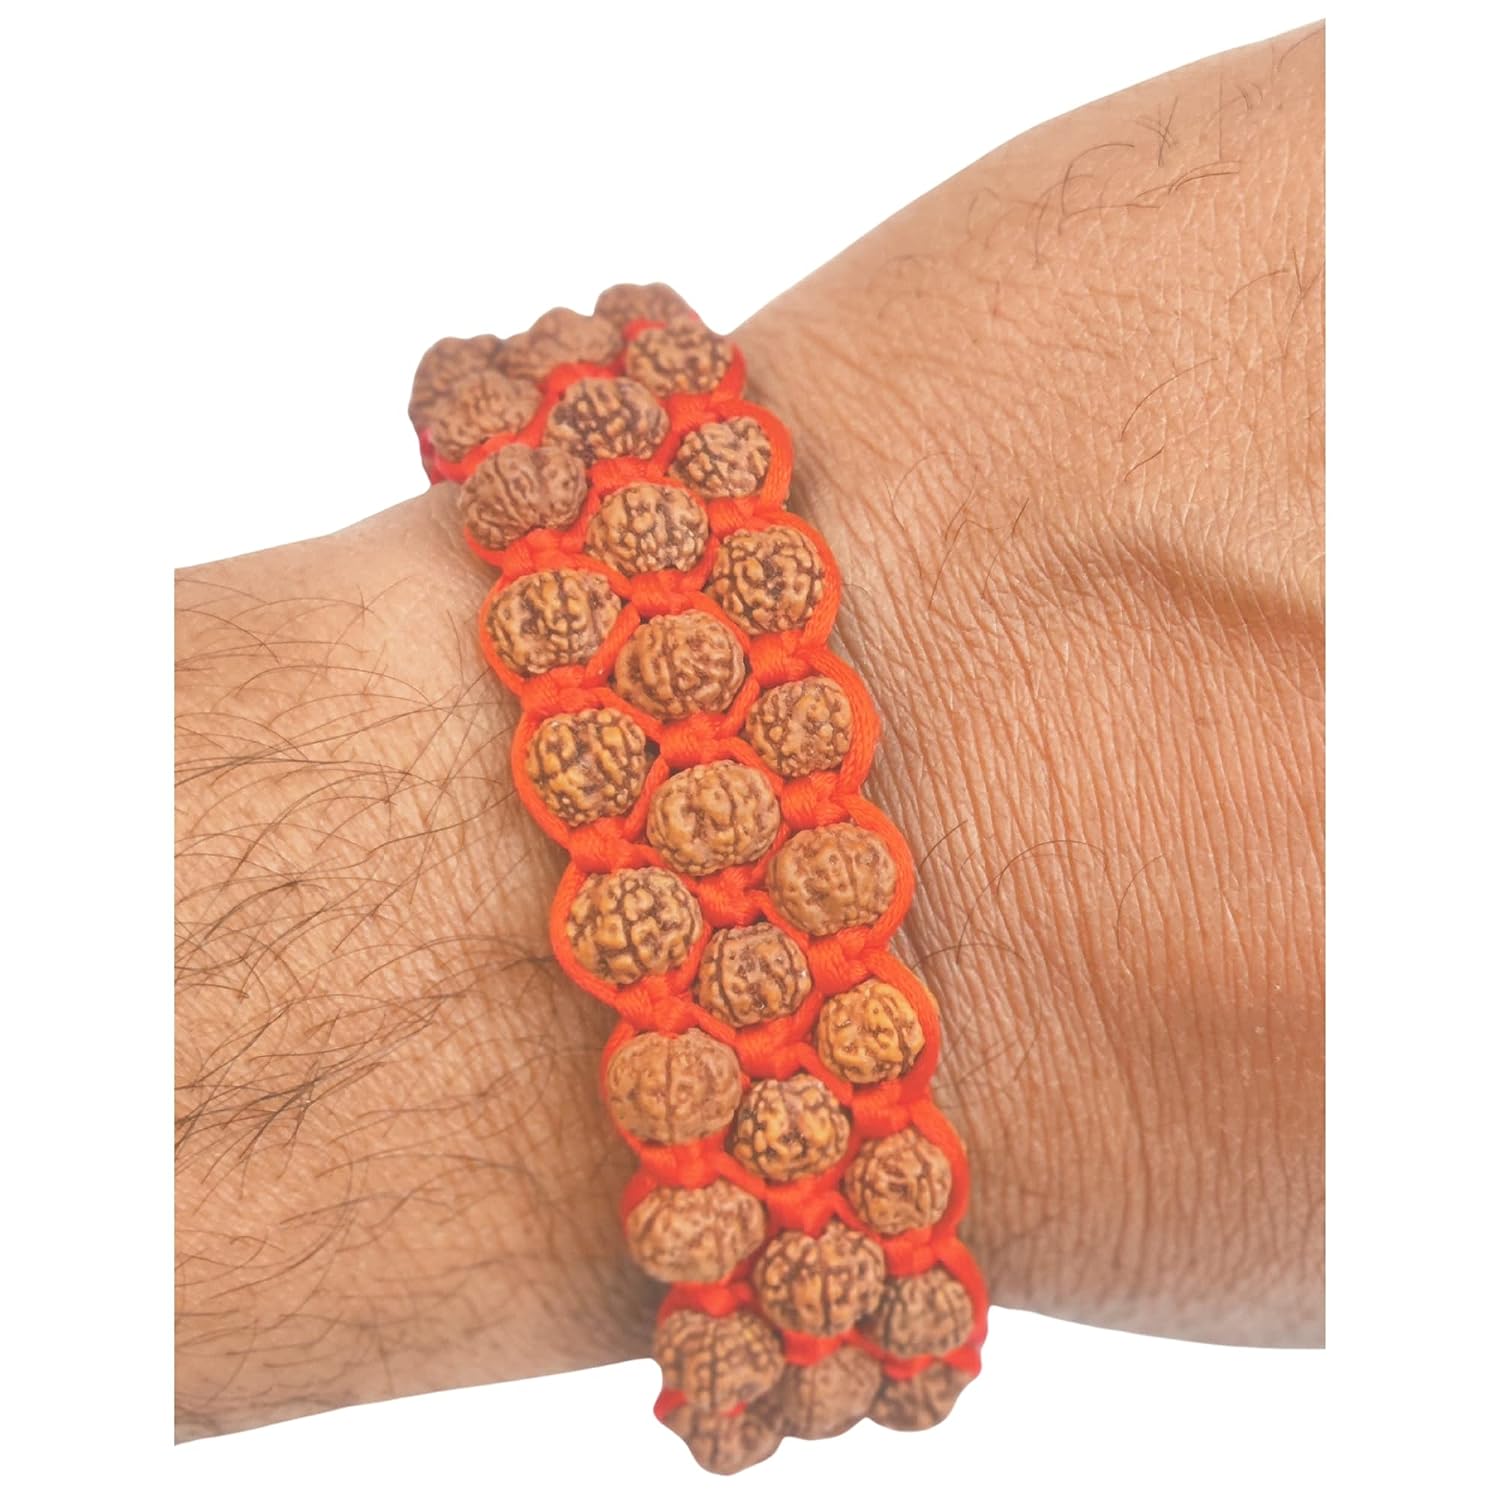 Rudraksh 3 Layered Adjustable thread bracelet for success